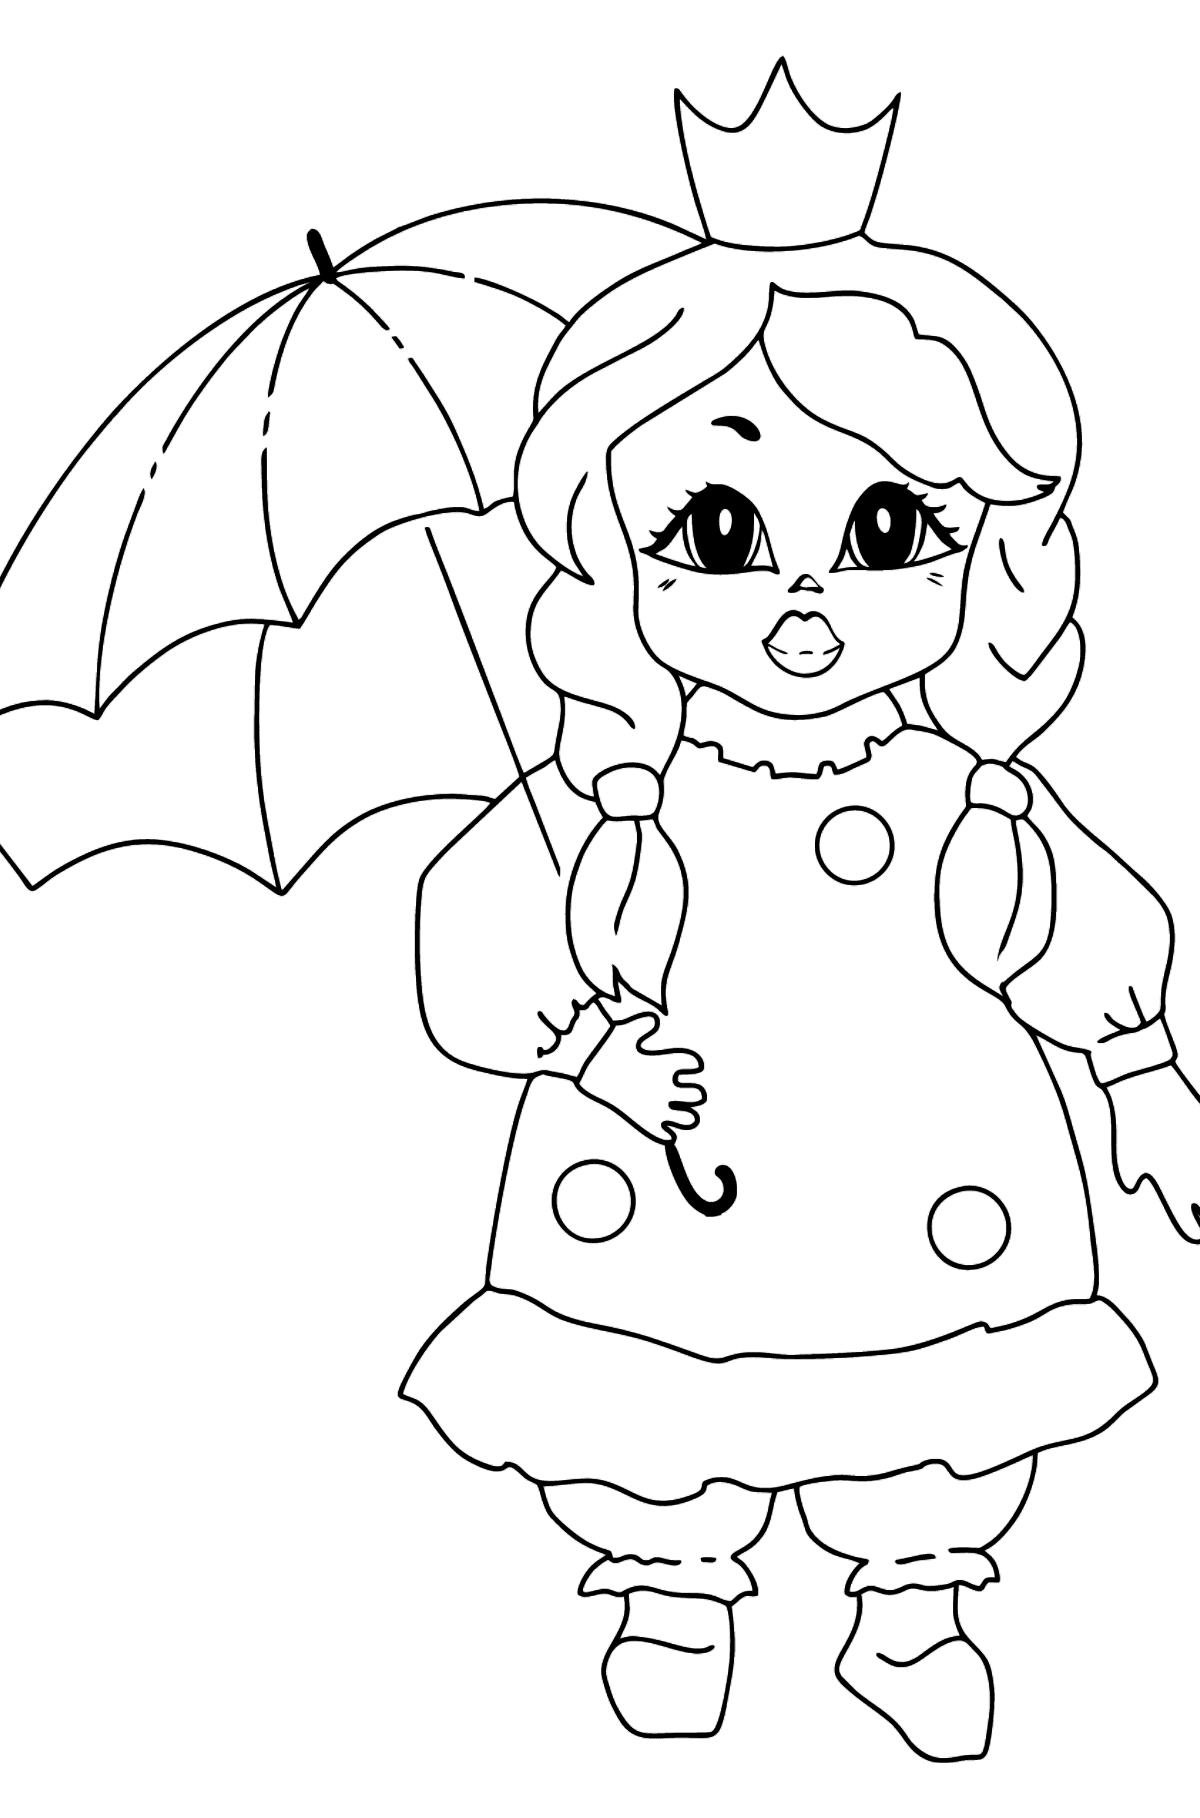 Ausmalbild - Eine Prinzessin mit einem Regenschirm - Malvorlagen für Kinder